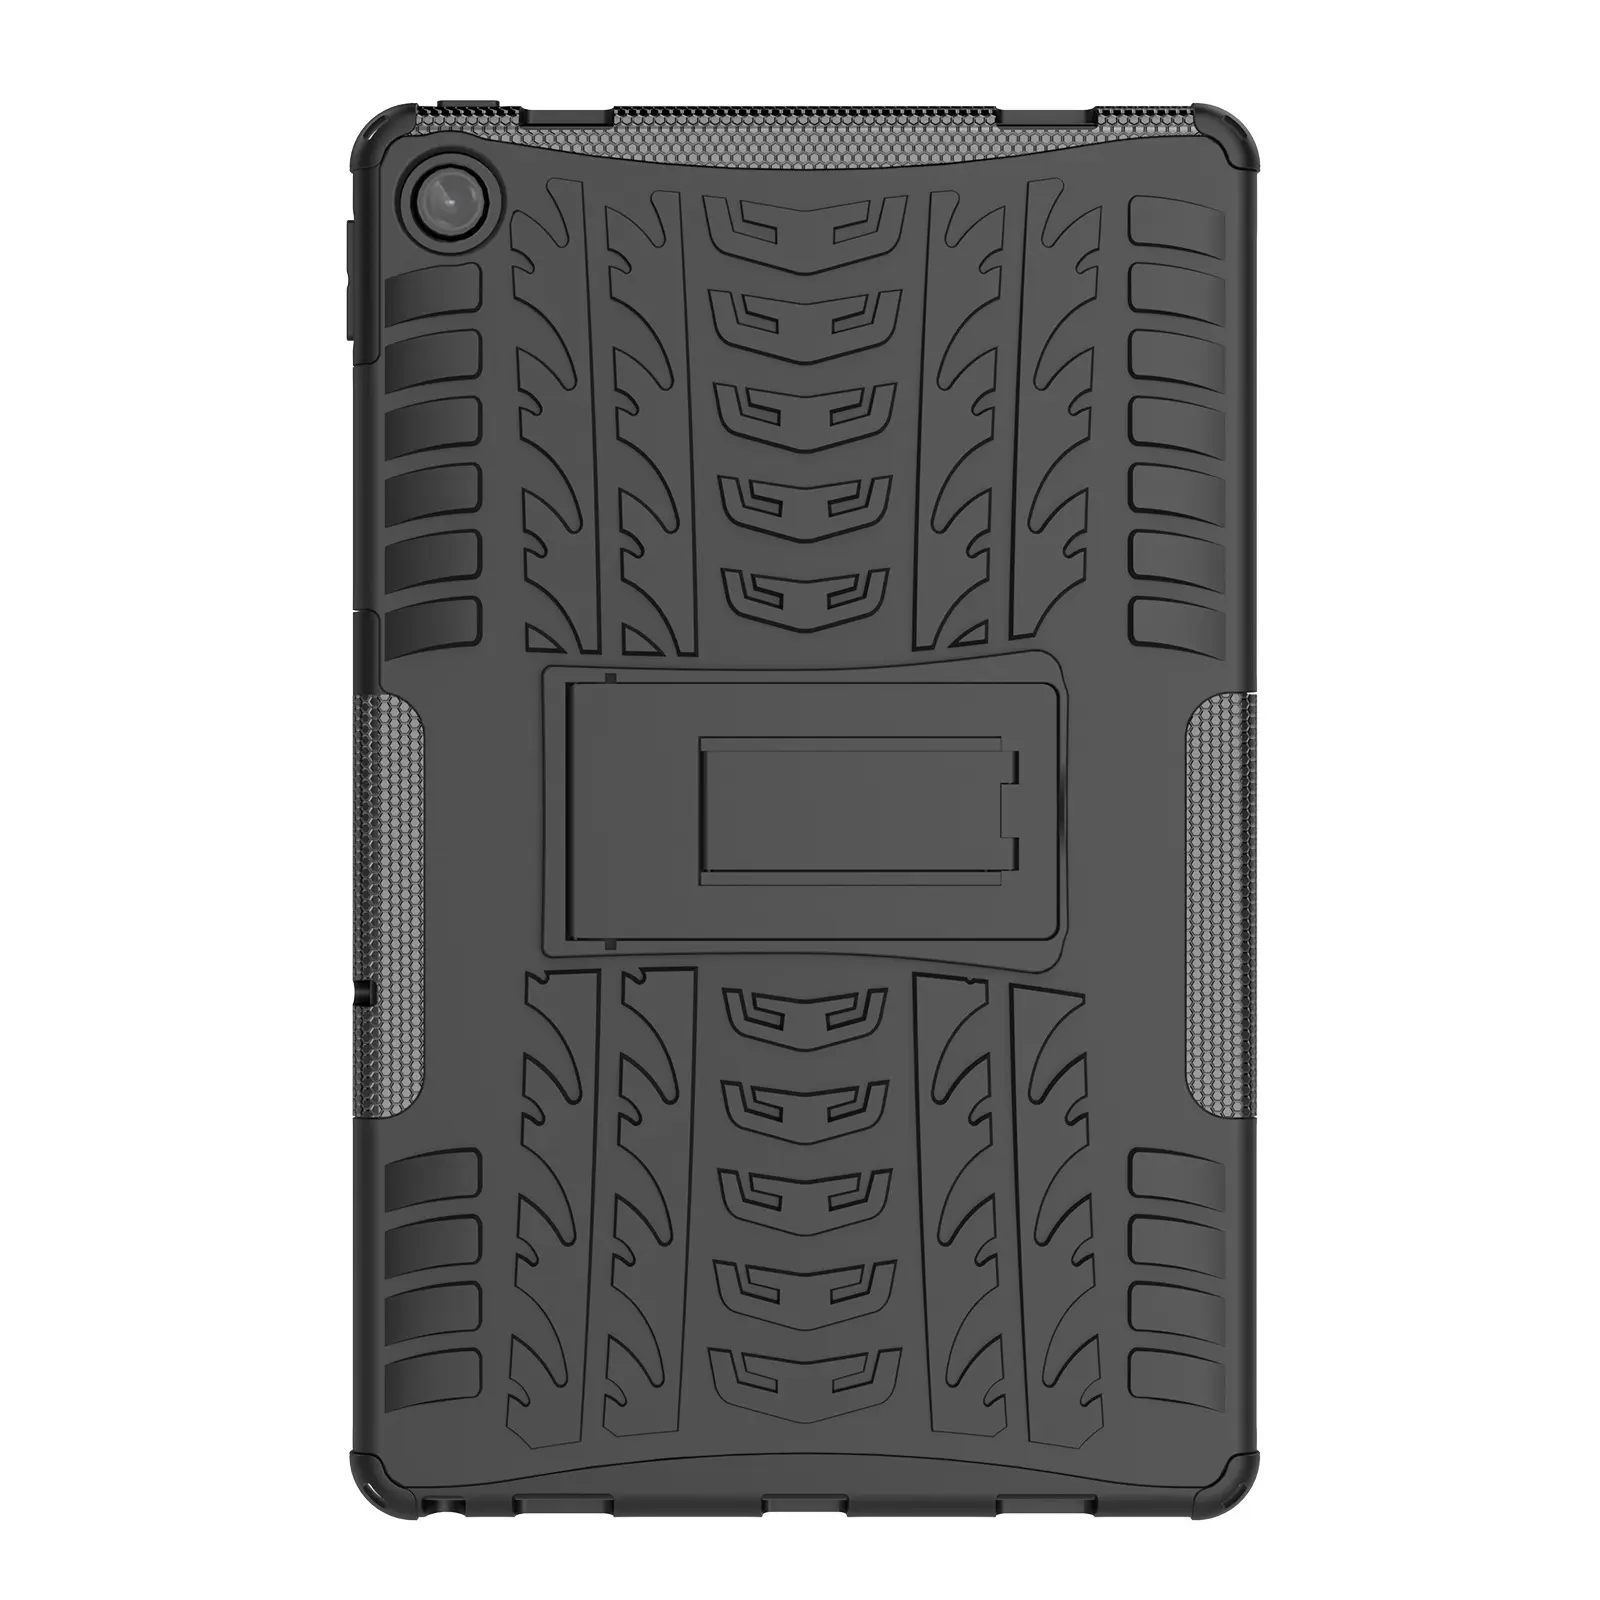 타이어 충격 방지 스탠드 태블릿 케이스 커버 레노버 M10 플러스 3 세대/Xiaoxin PAD 10.6 인치